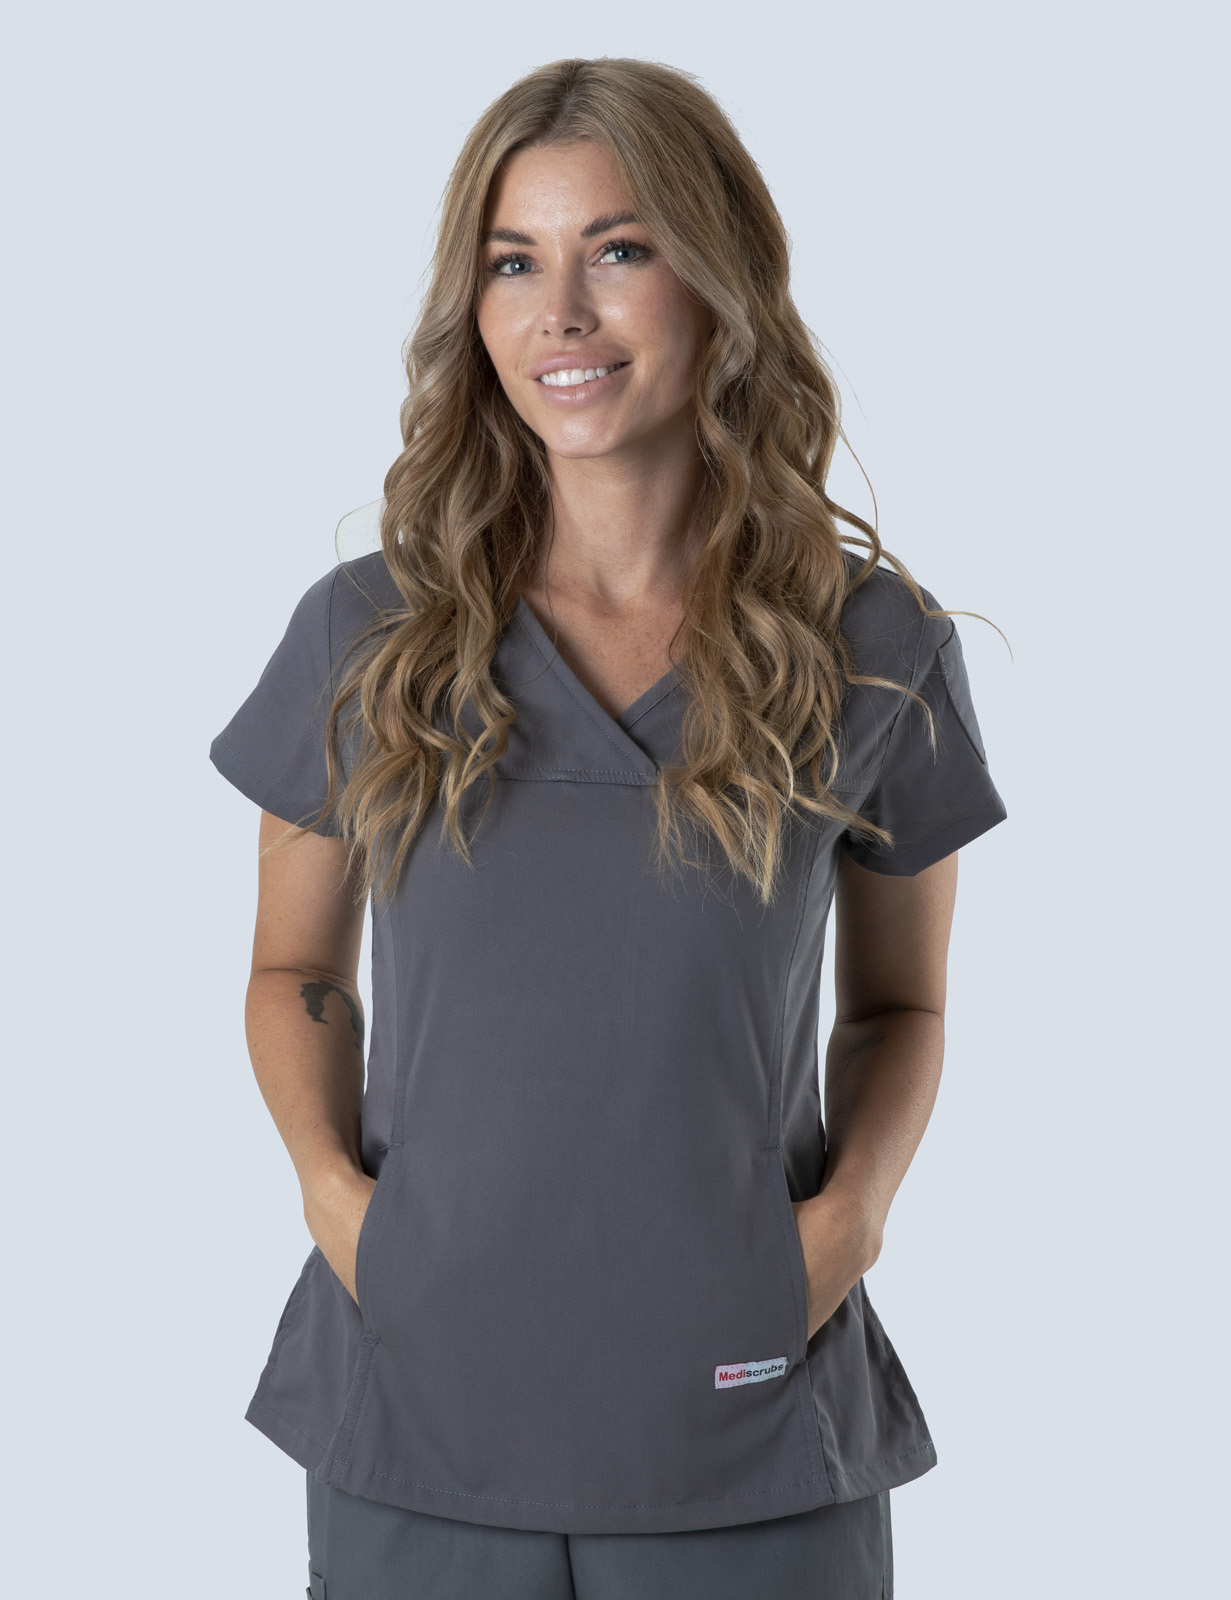 Queensland Children's Hospital Emergency Department Registered  Nurse  Uniform Top Bundle  (Women's Fit Top in Steel Grey incl Logos)